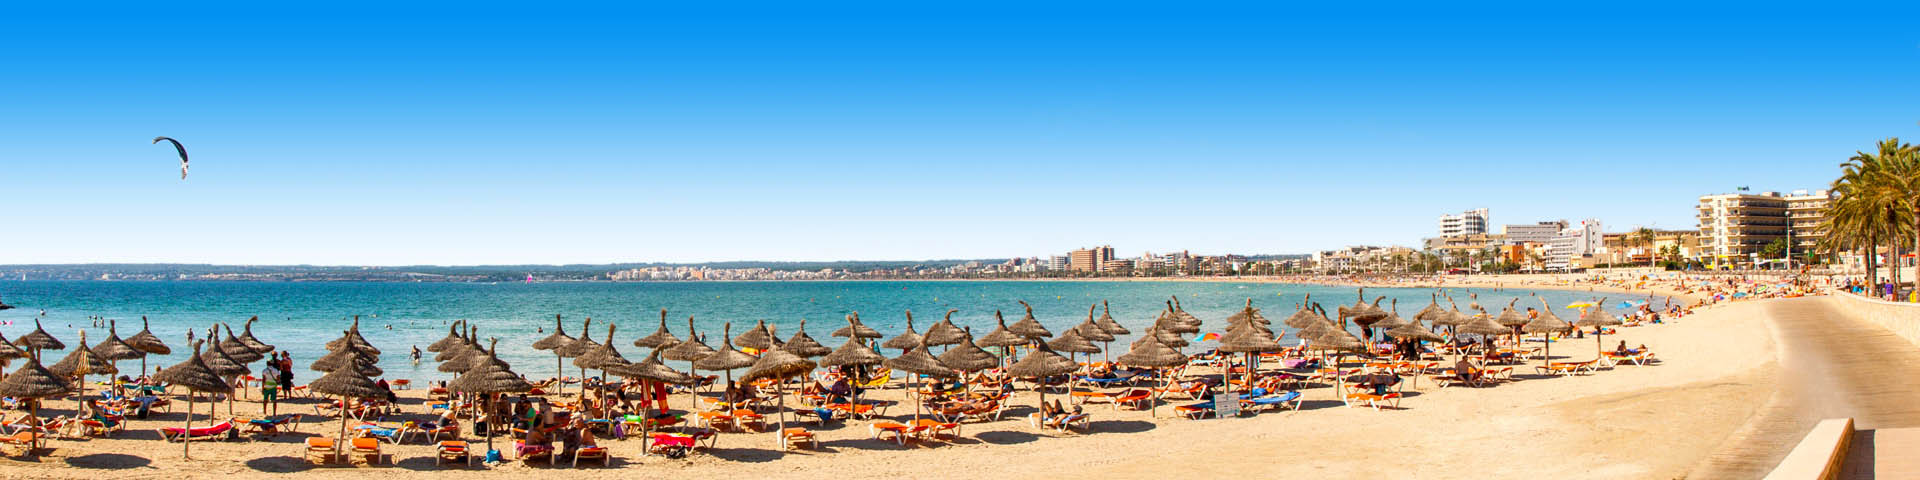 Ligbedjes met parasols op het strand van Playa de Palma op Mallorca